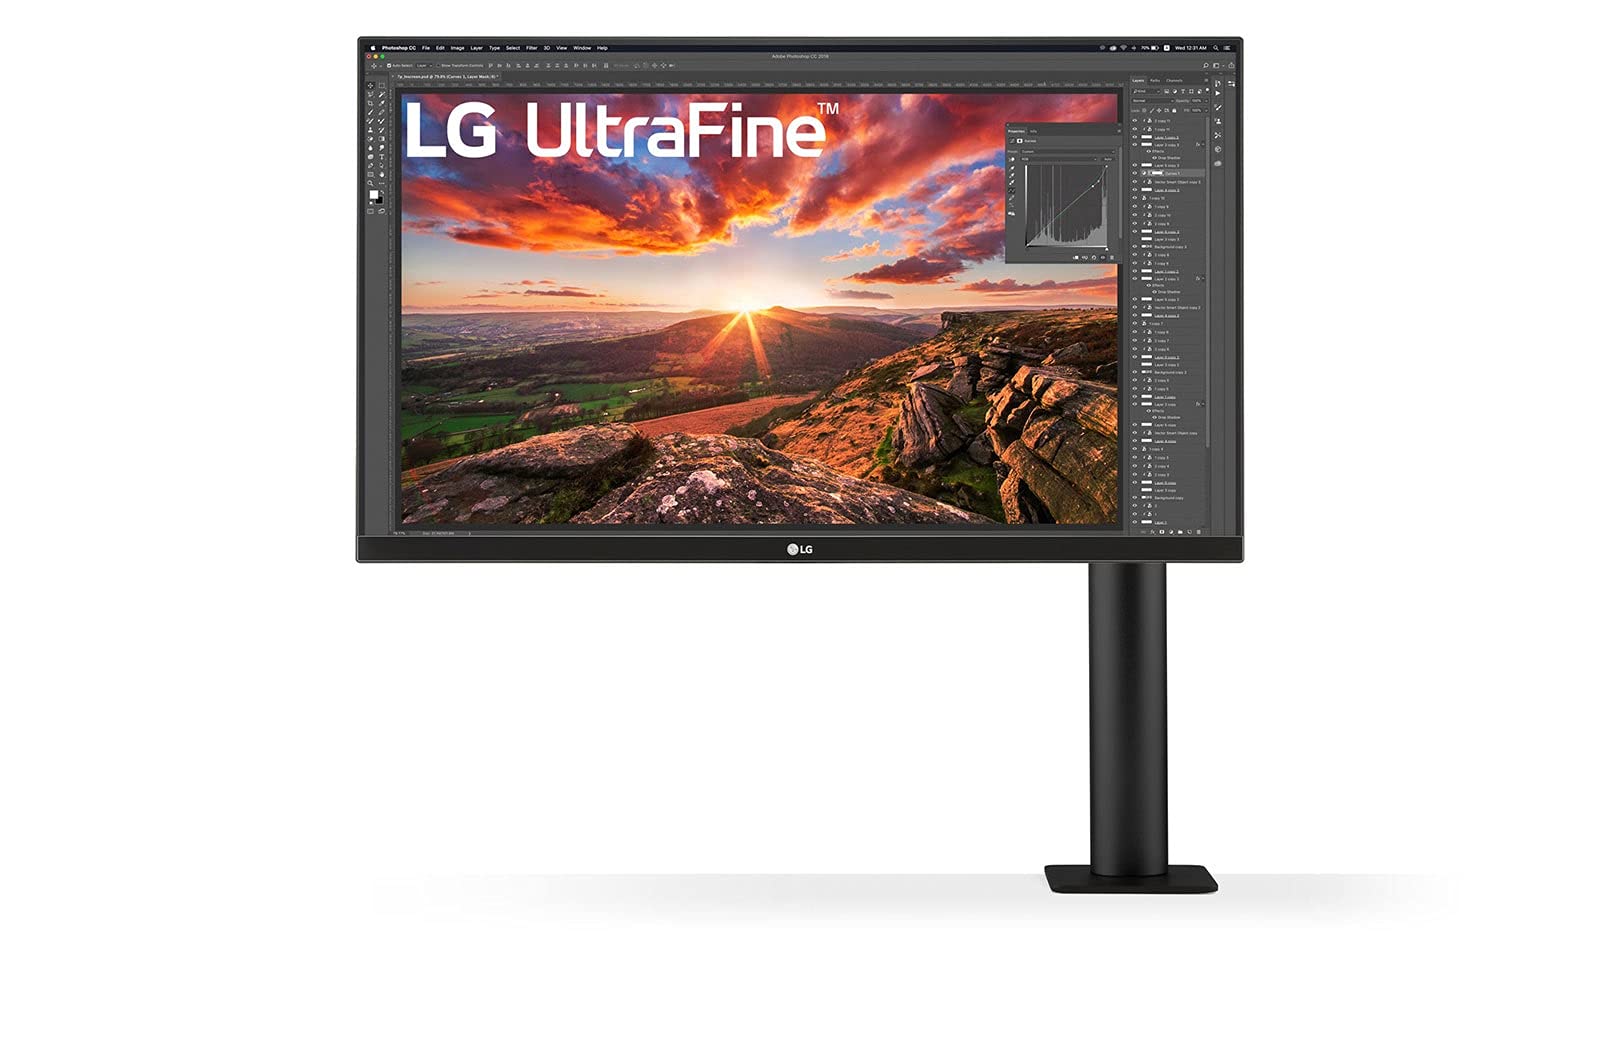 LG 27UN880-B 68,4 cm (27 Zoll) UltraFine Ergo Monitor (4K UHD, IPS-Panel, ergonomischer Standfuß), schwarz